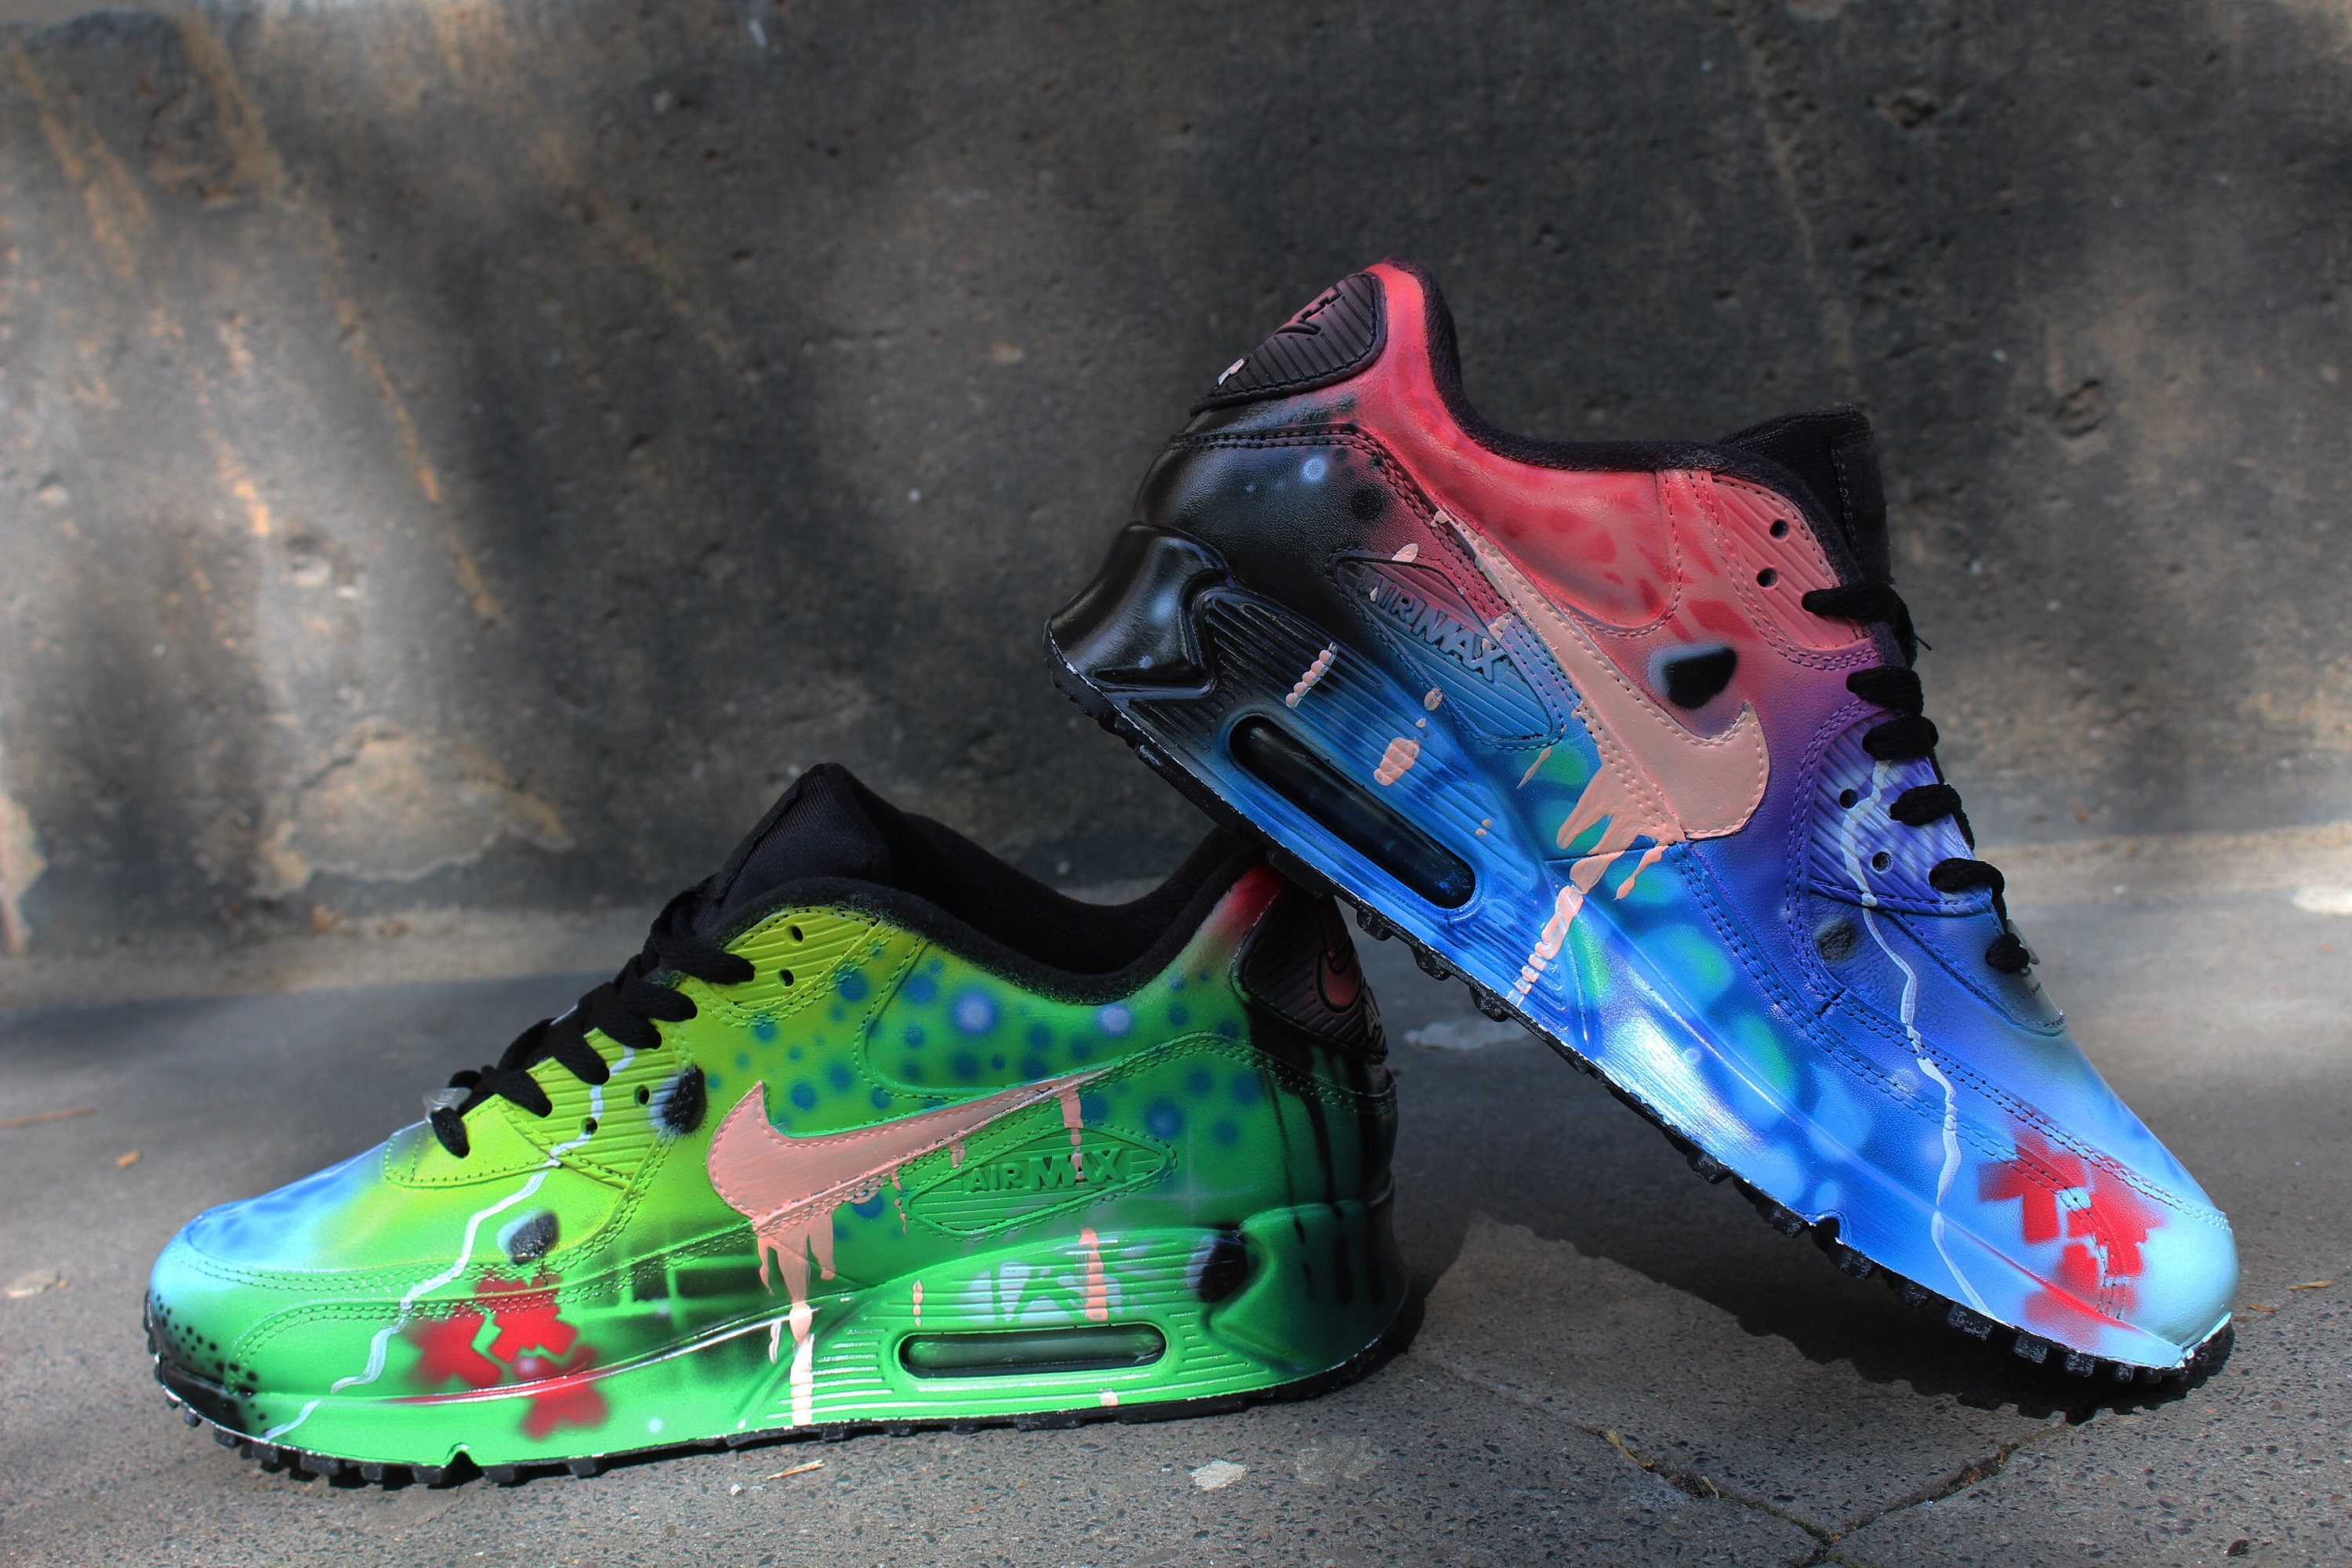 Custom Nike Air Max 90 Funky Galaxy Colors Graffiti Airbrush Sneaker Art UNIKAT Shoes